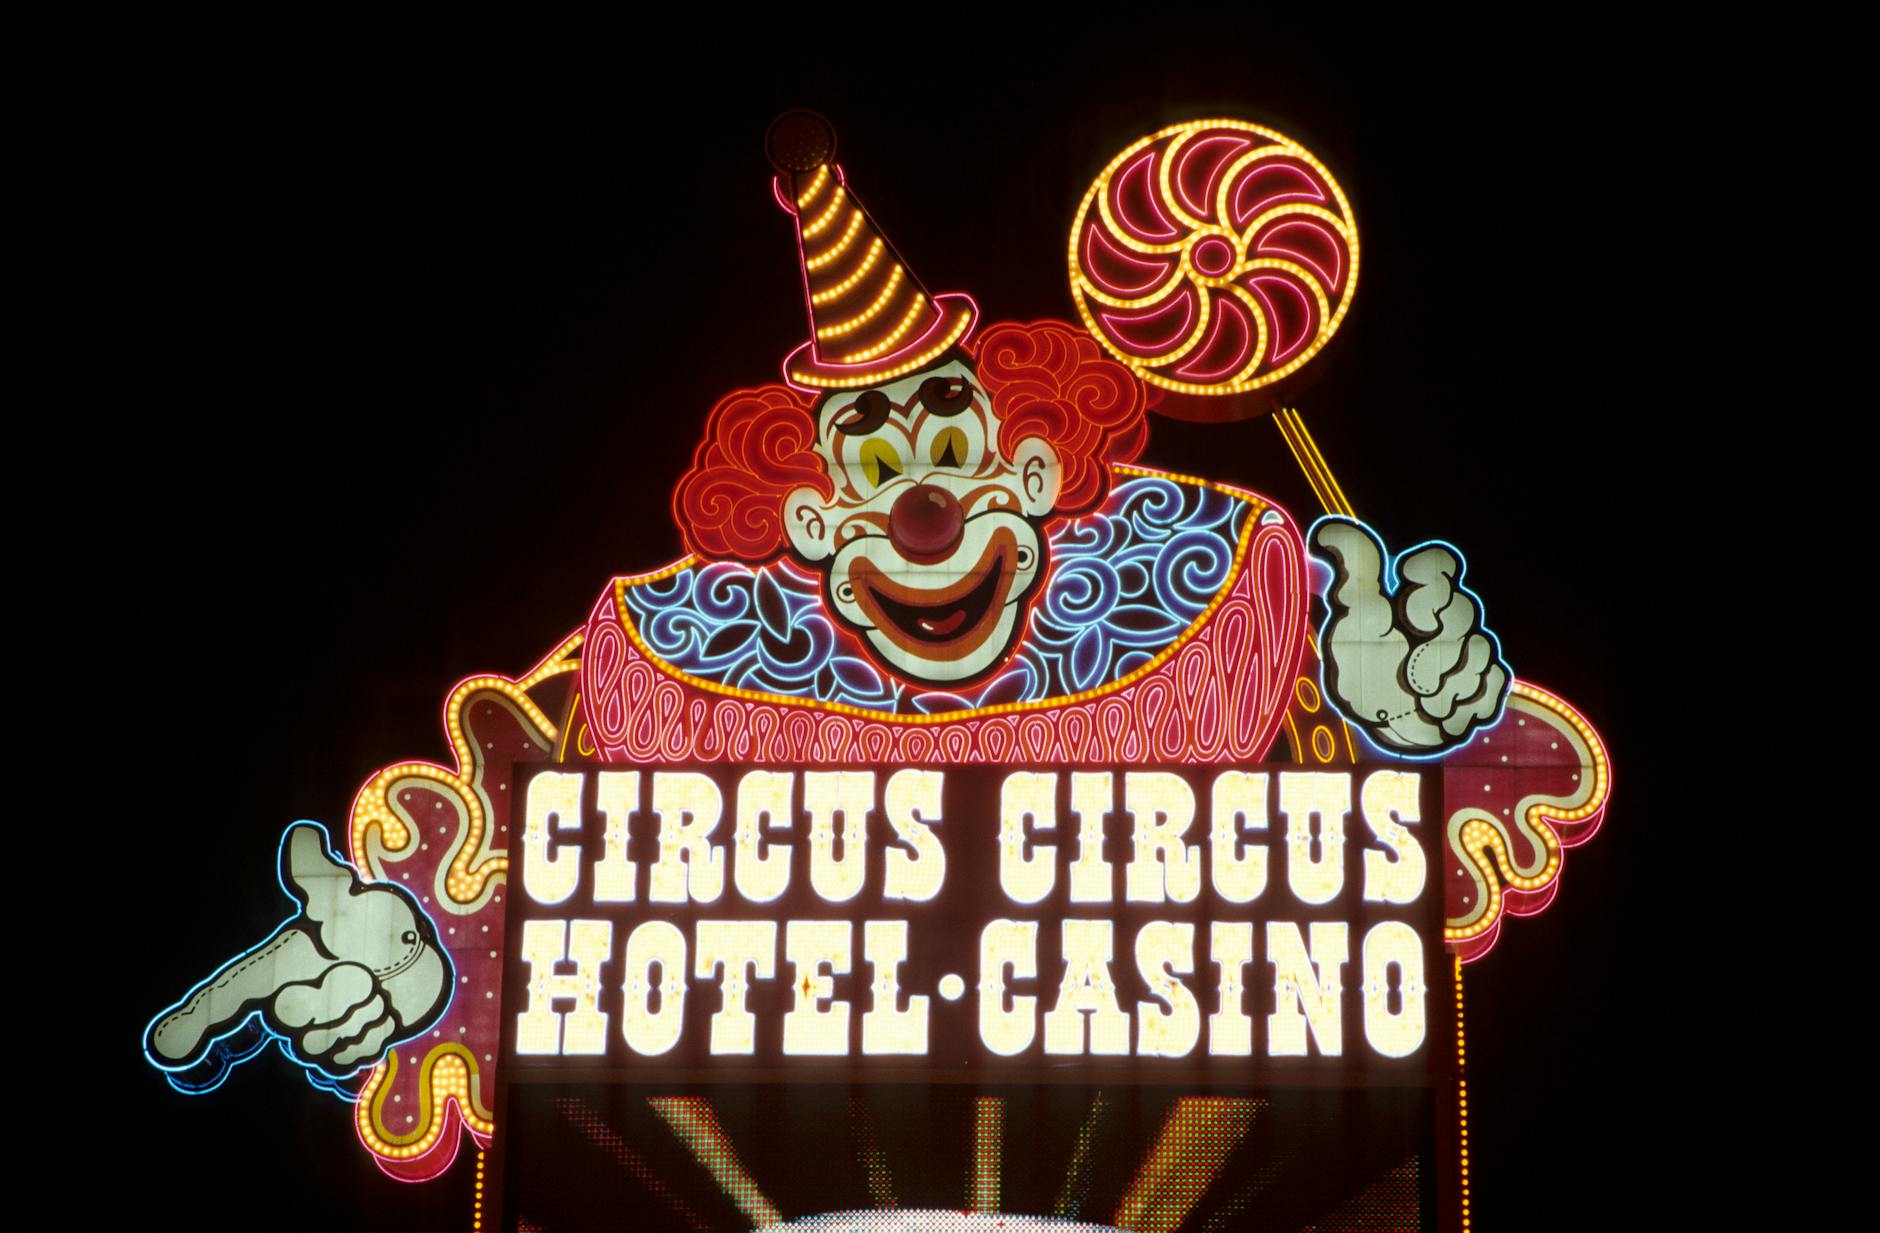 Clown neonskyltar på ett hotell och kasino